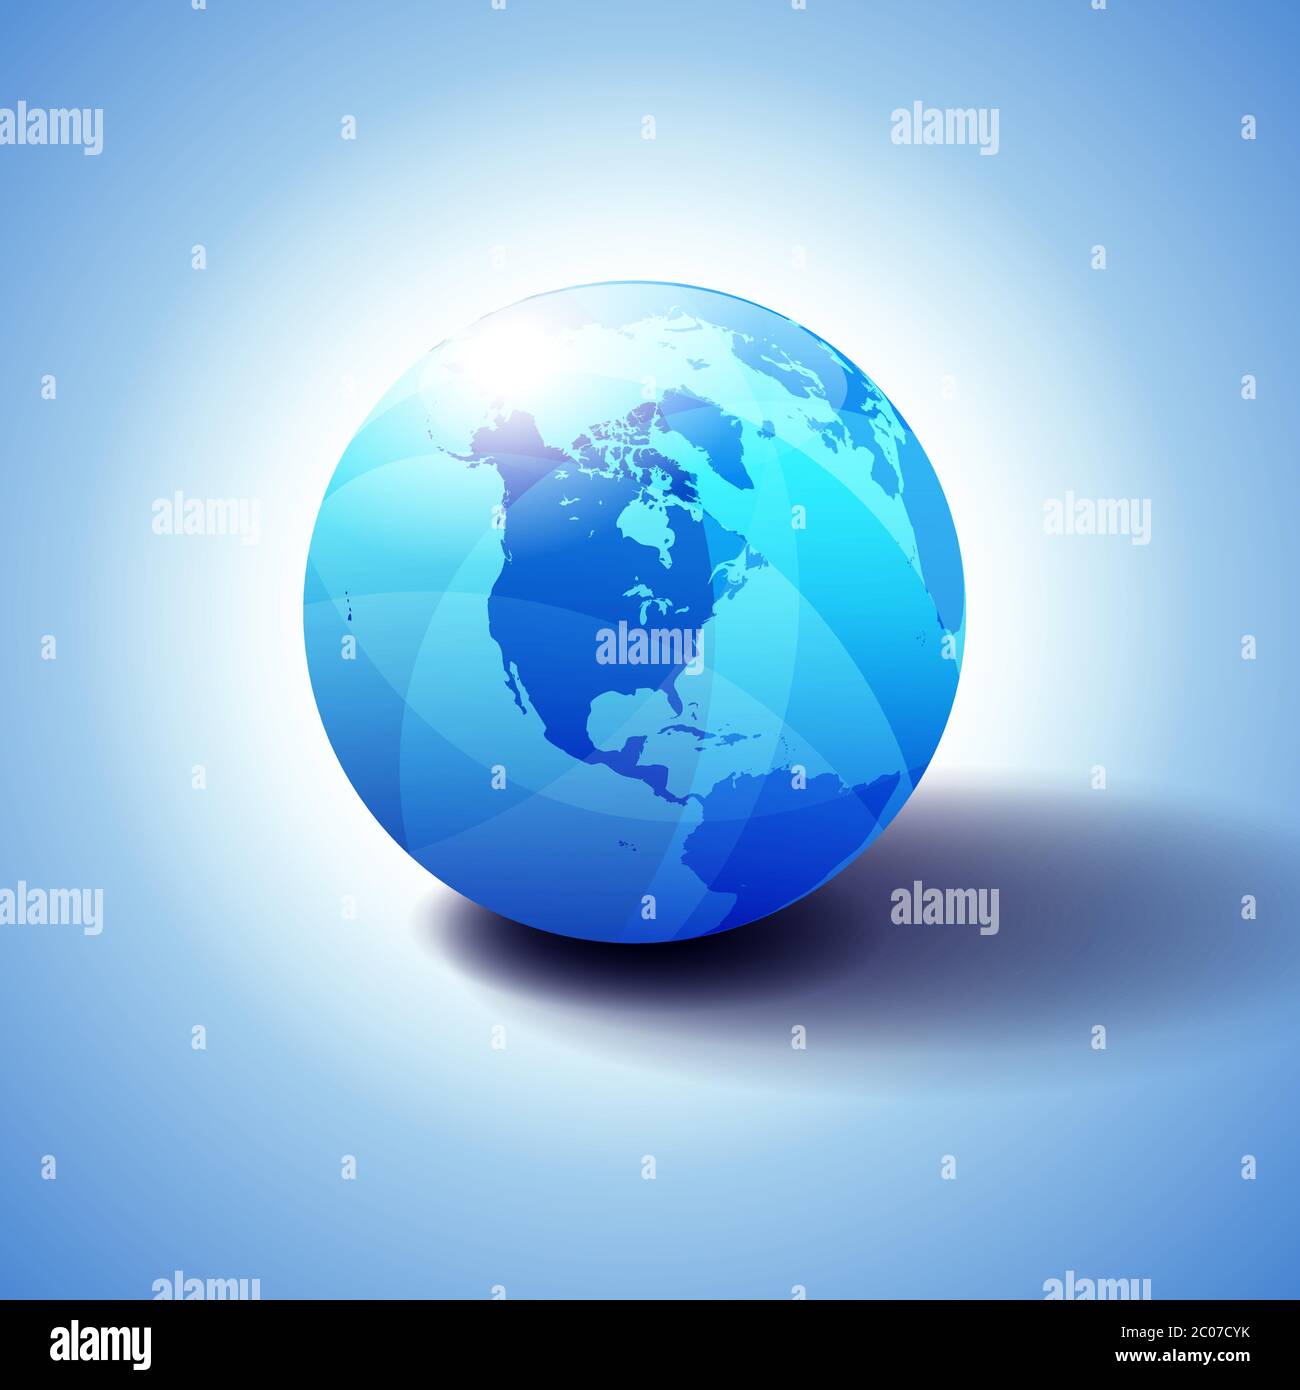 Amerikanischer Hintergrund mit Globe Icon 3D-Illustration, glänzende, glänzende Kugel mit Global Map in subtilen Blues, die ein transparentes Gefühl gibt. Stock Vektor